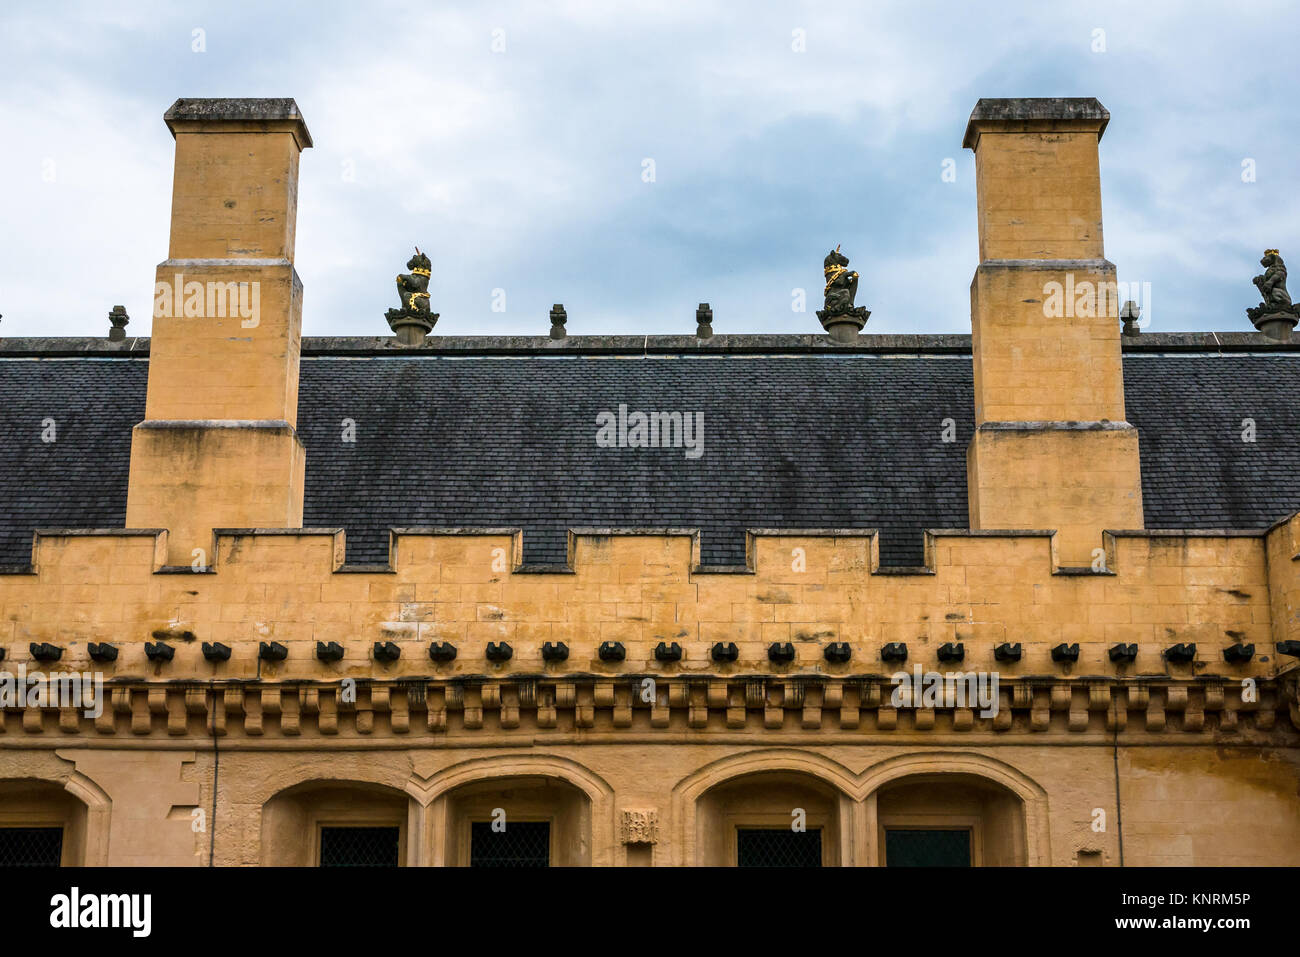 Vue rapprochée sur le toit de la Great Hall du château de Stirling lavée à la chaux jaune, Stirling, Écosse, Royaume-Uni, avec des lions couronnés sur le toit Banque D'Images